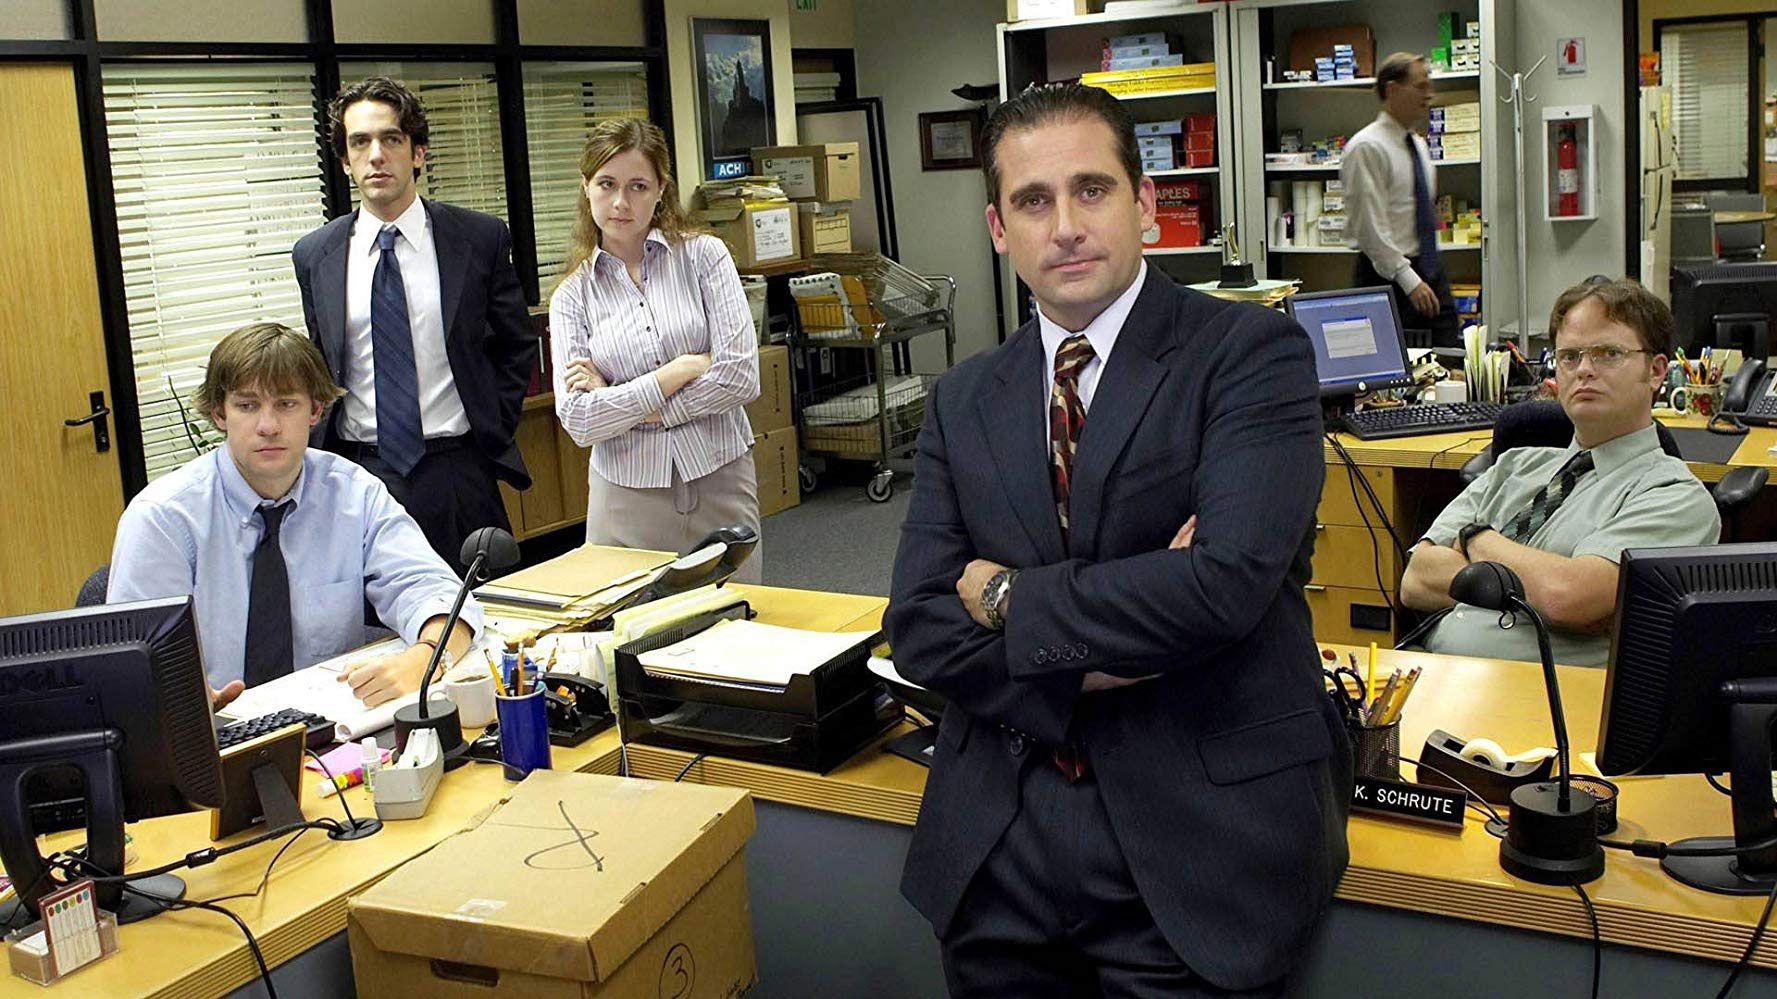 Versão norte-americana de “The Office” vai ficar disponível na Netflix Portugal